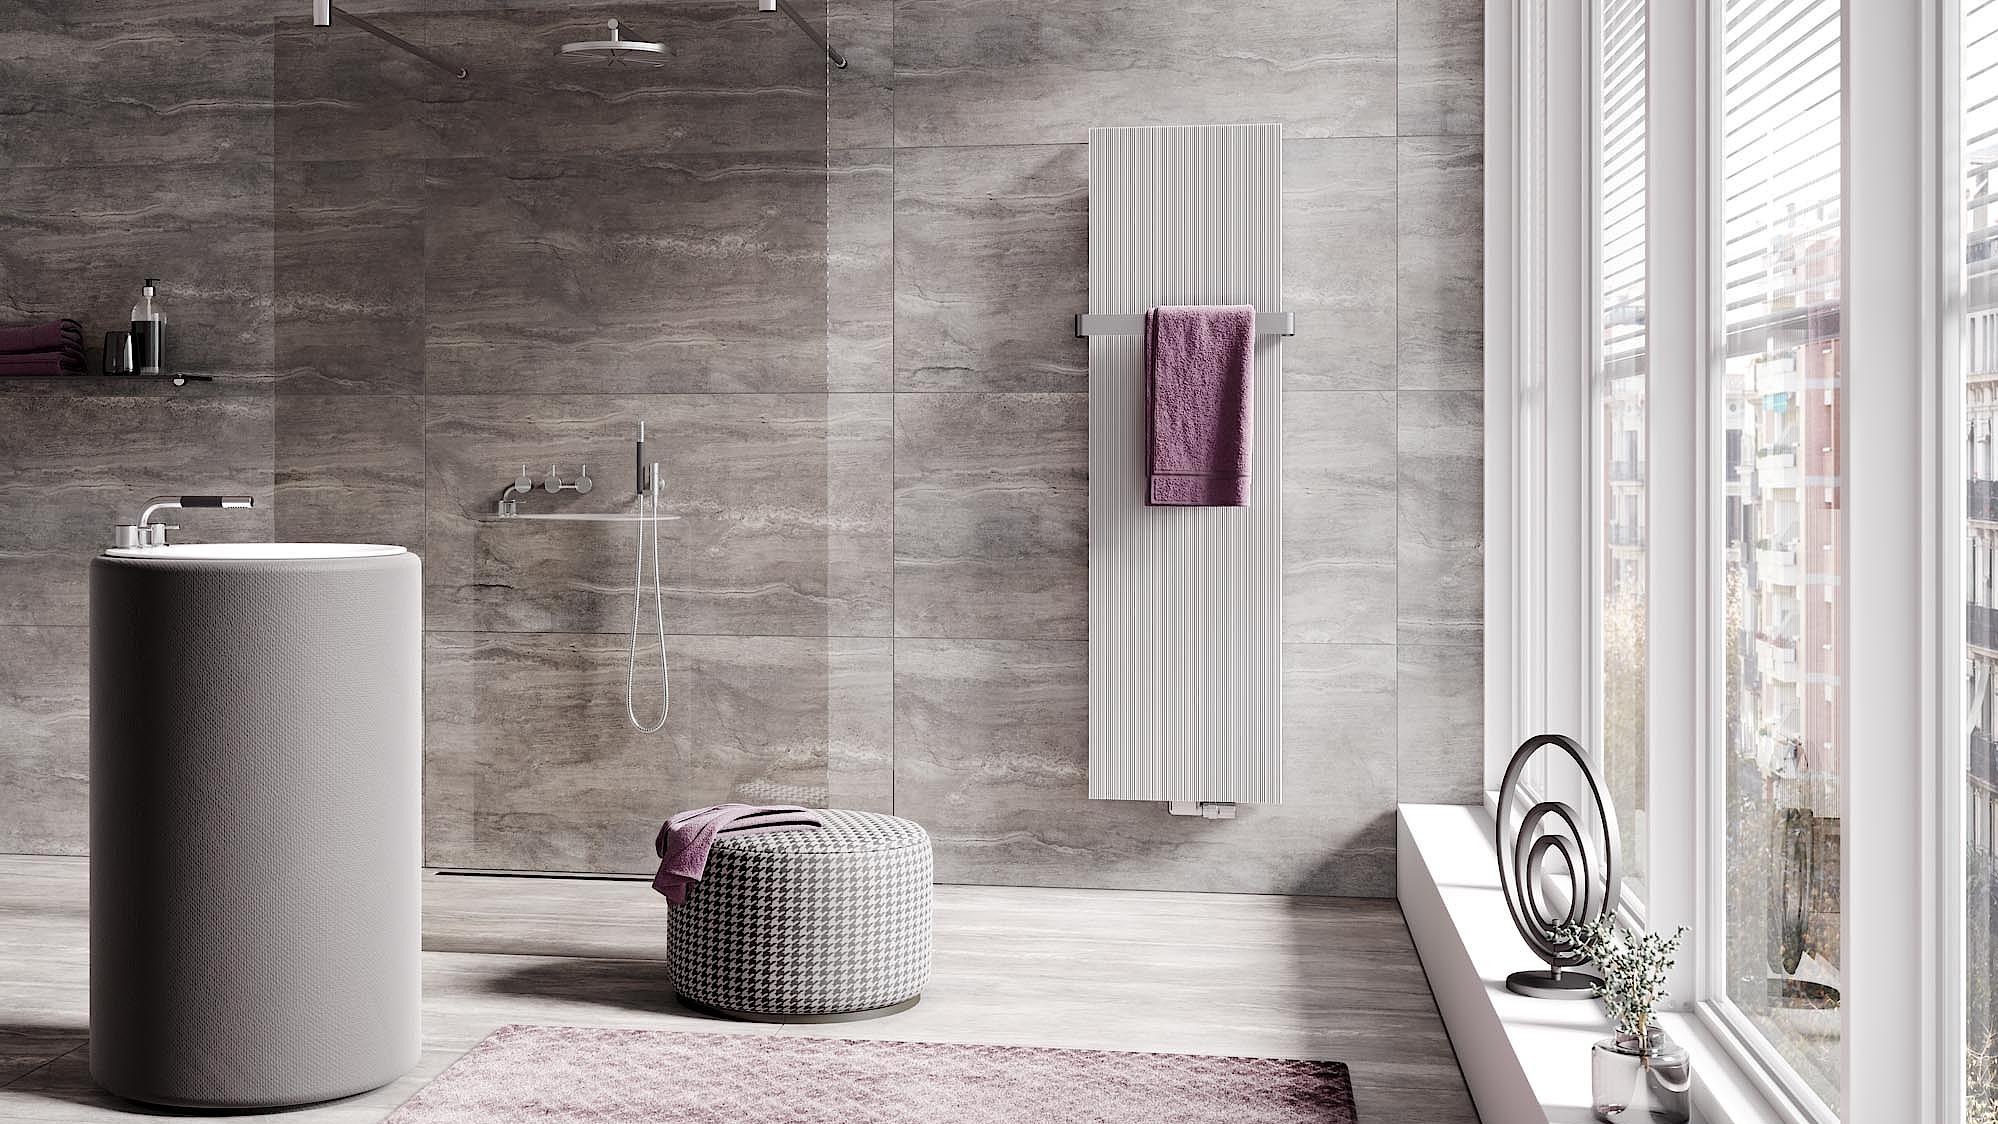 Grzejniki dekoracyjne i łazienkowe Kermi Decor-Arte Line – finezyjnie profilowana powierzchnia. Różne wartości kontrastu.